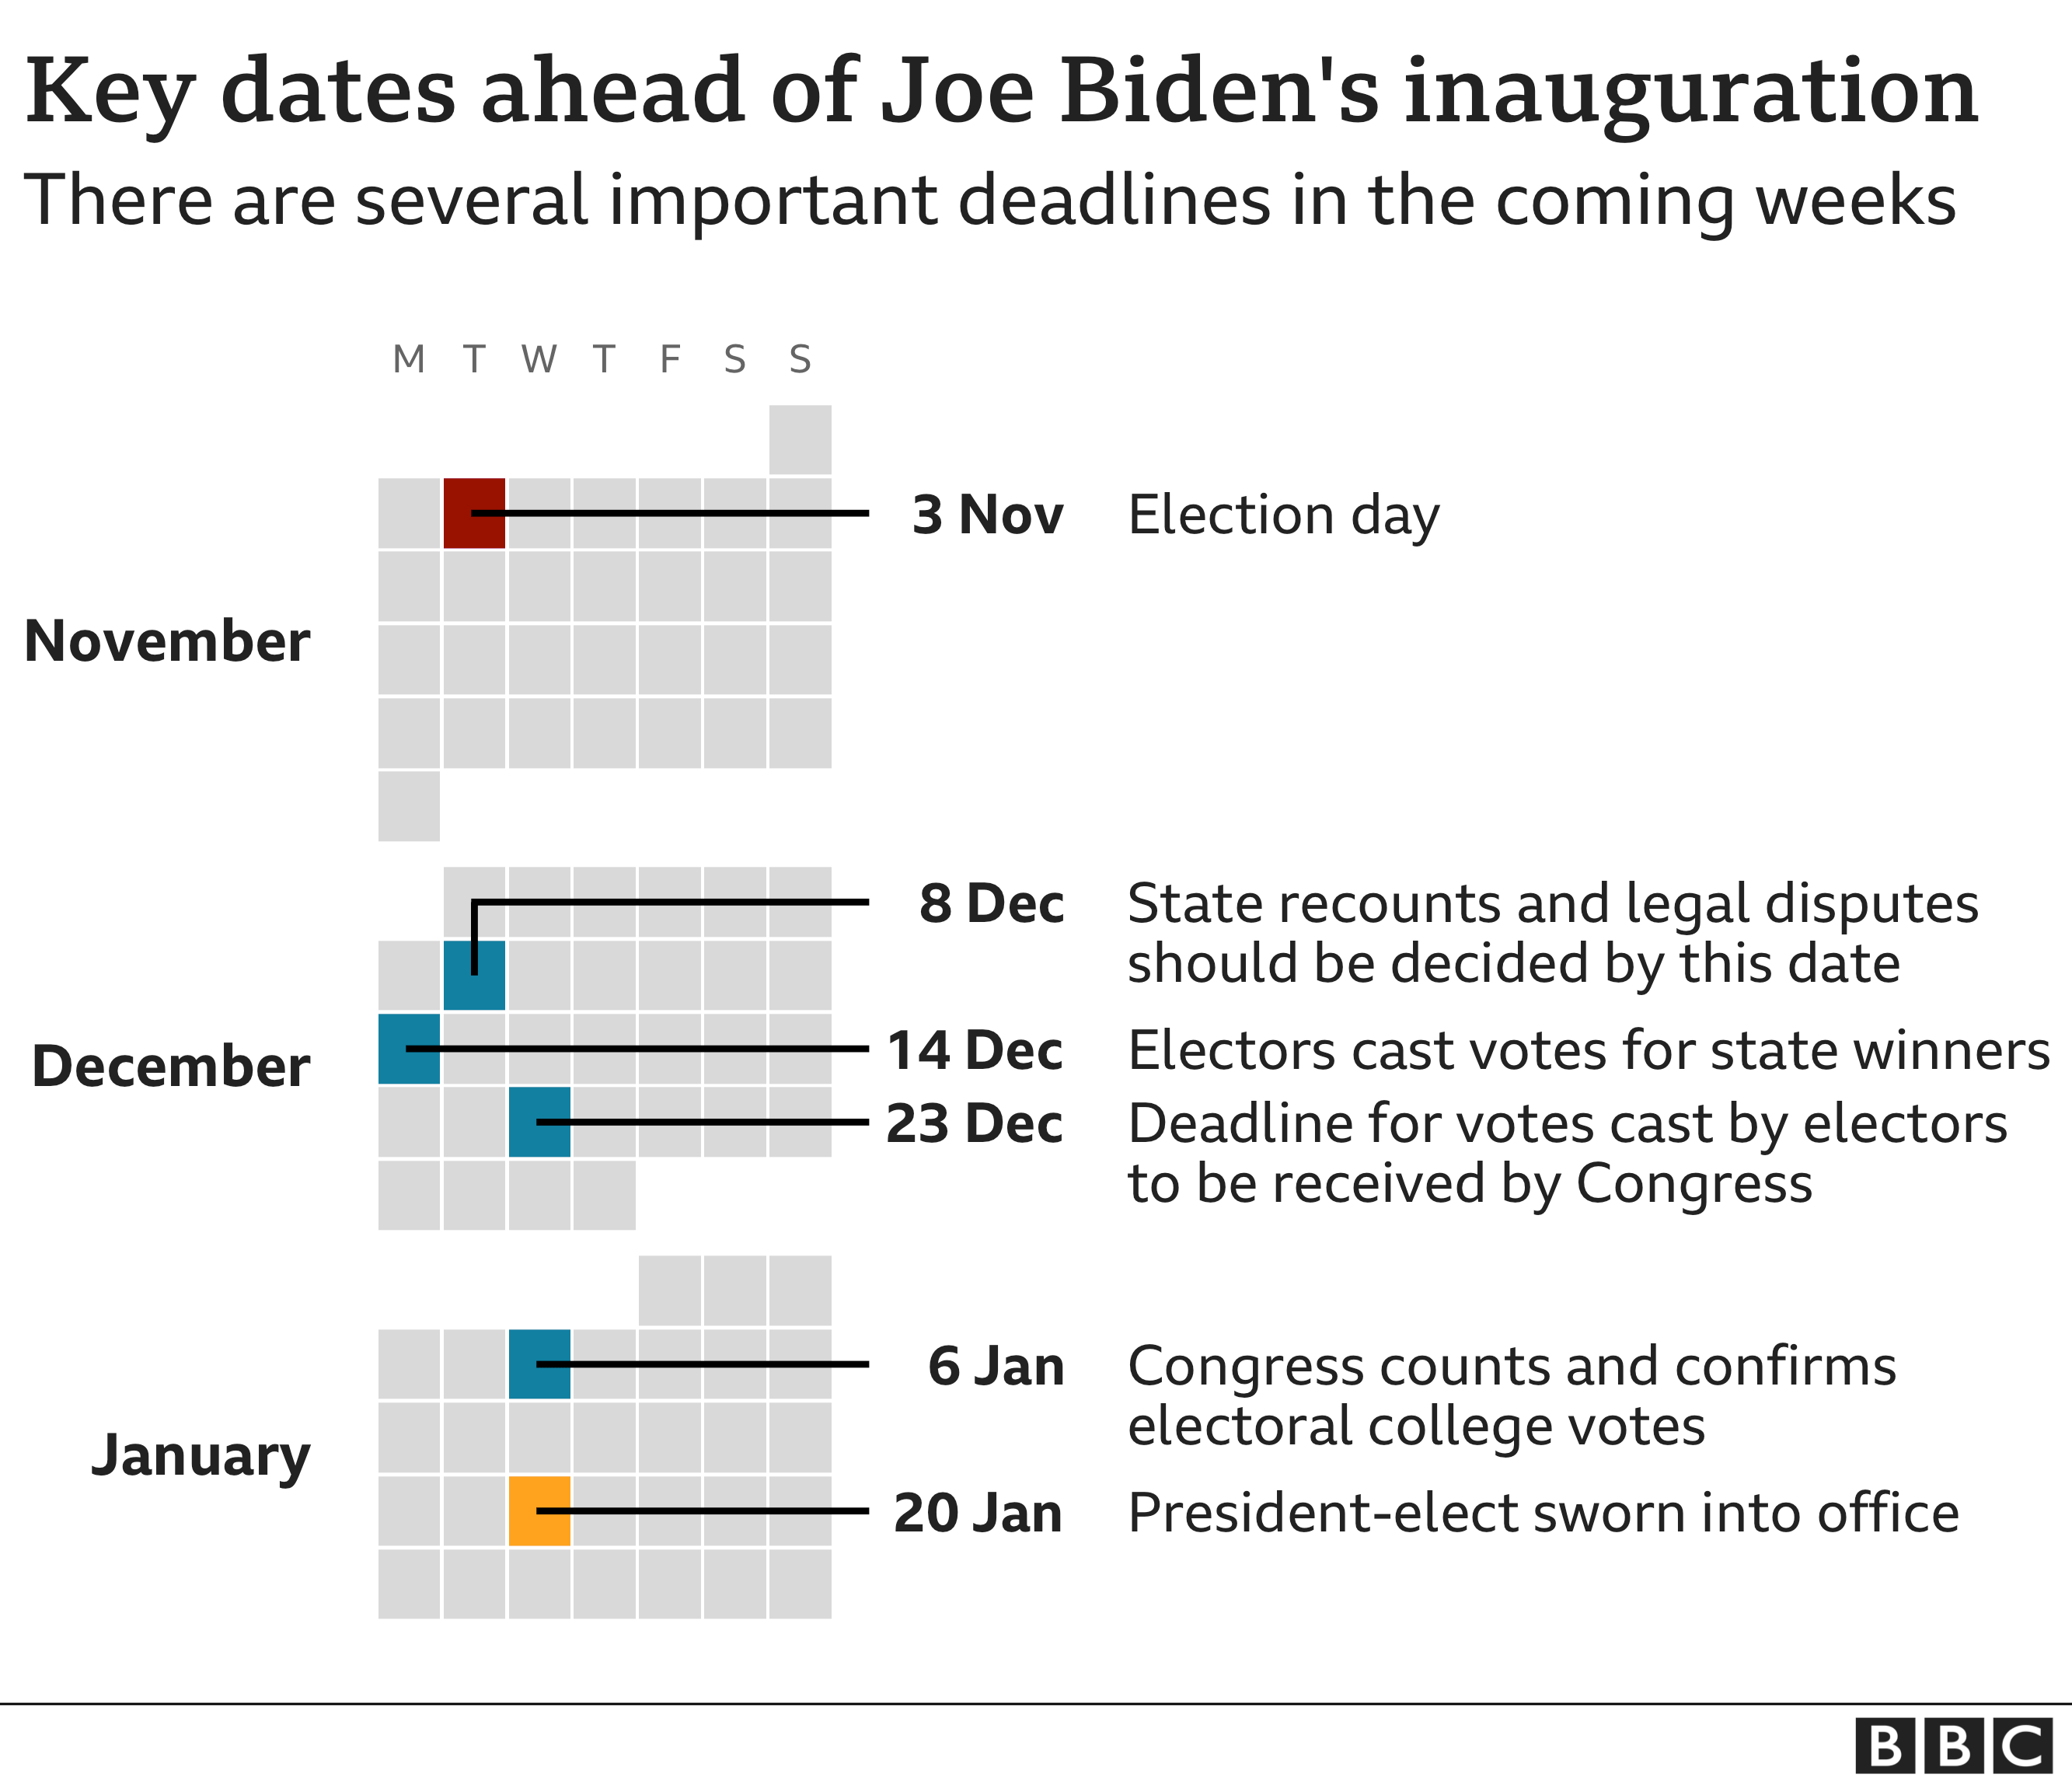 Klíčové termíny před Joe Biden úřadu